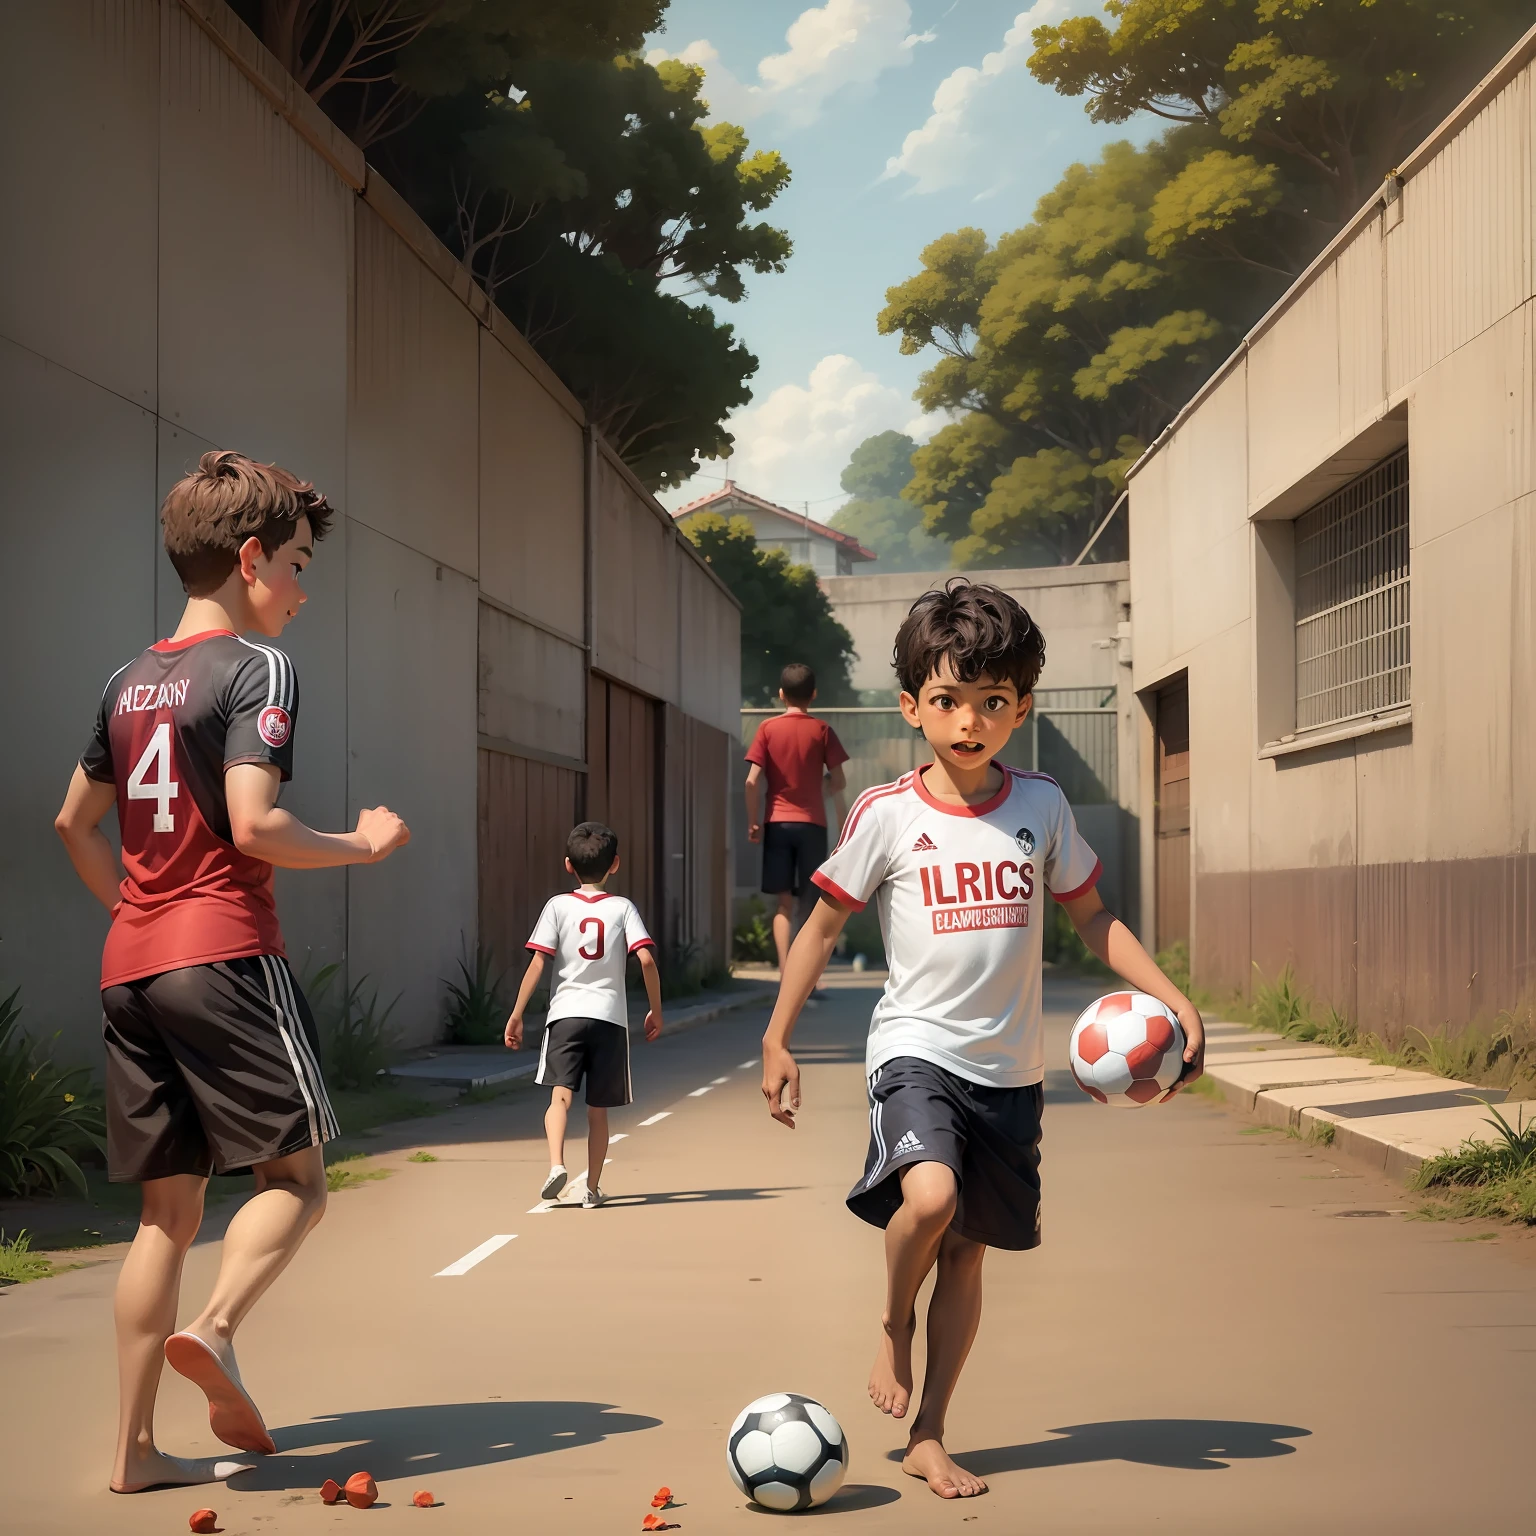 Brasilianische Kinder spielen Fußball auf der Straße mit einem Community-Hintergrund aus Rio de Janeiro